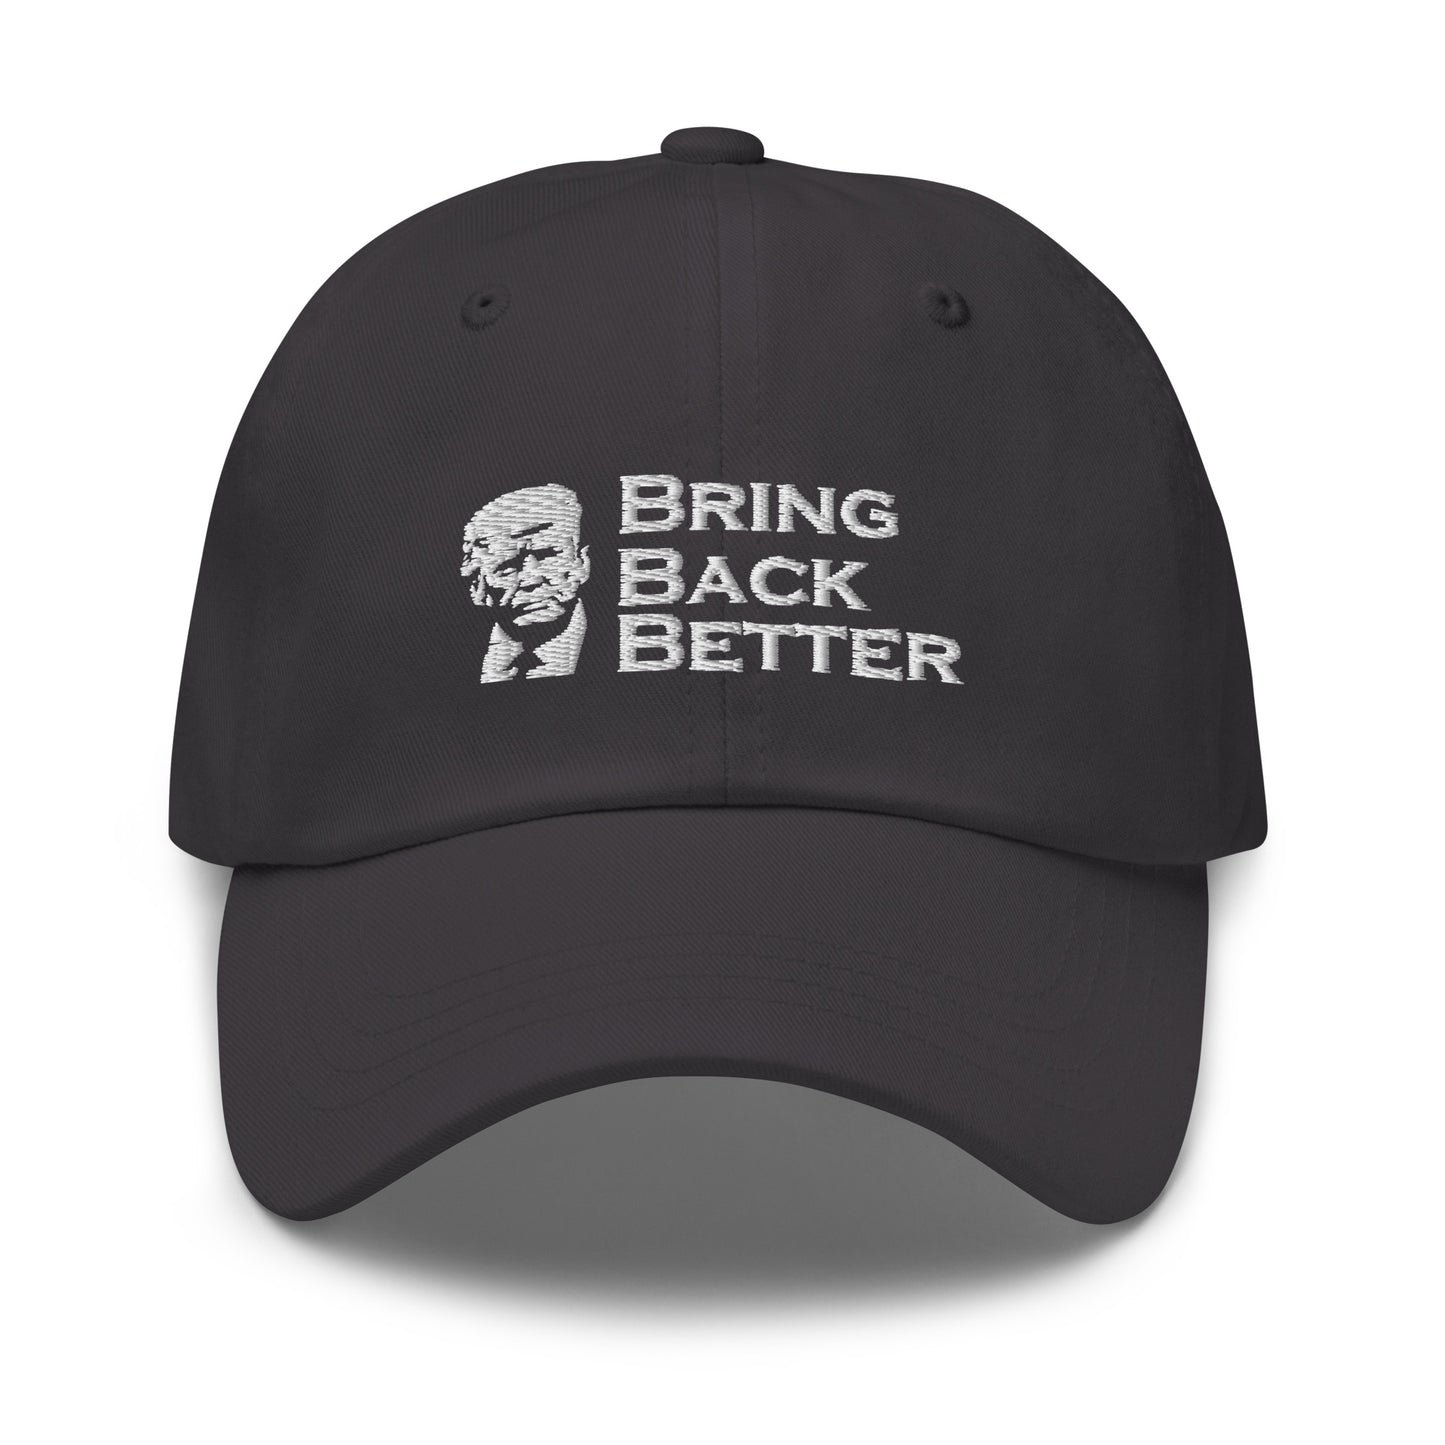 Bring Back Better hat